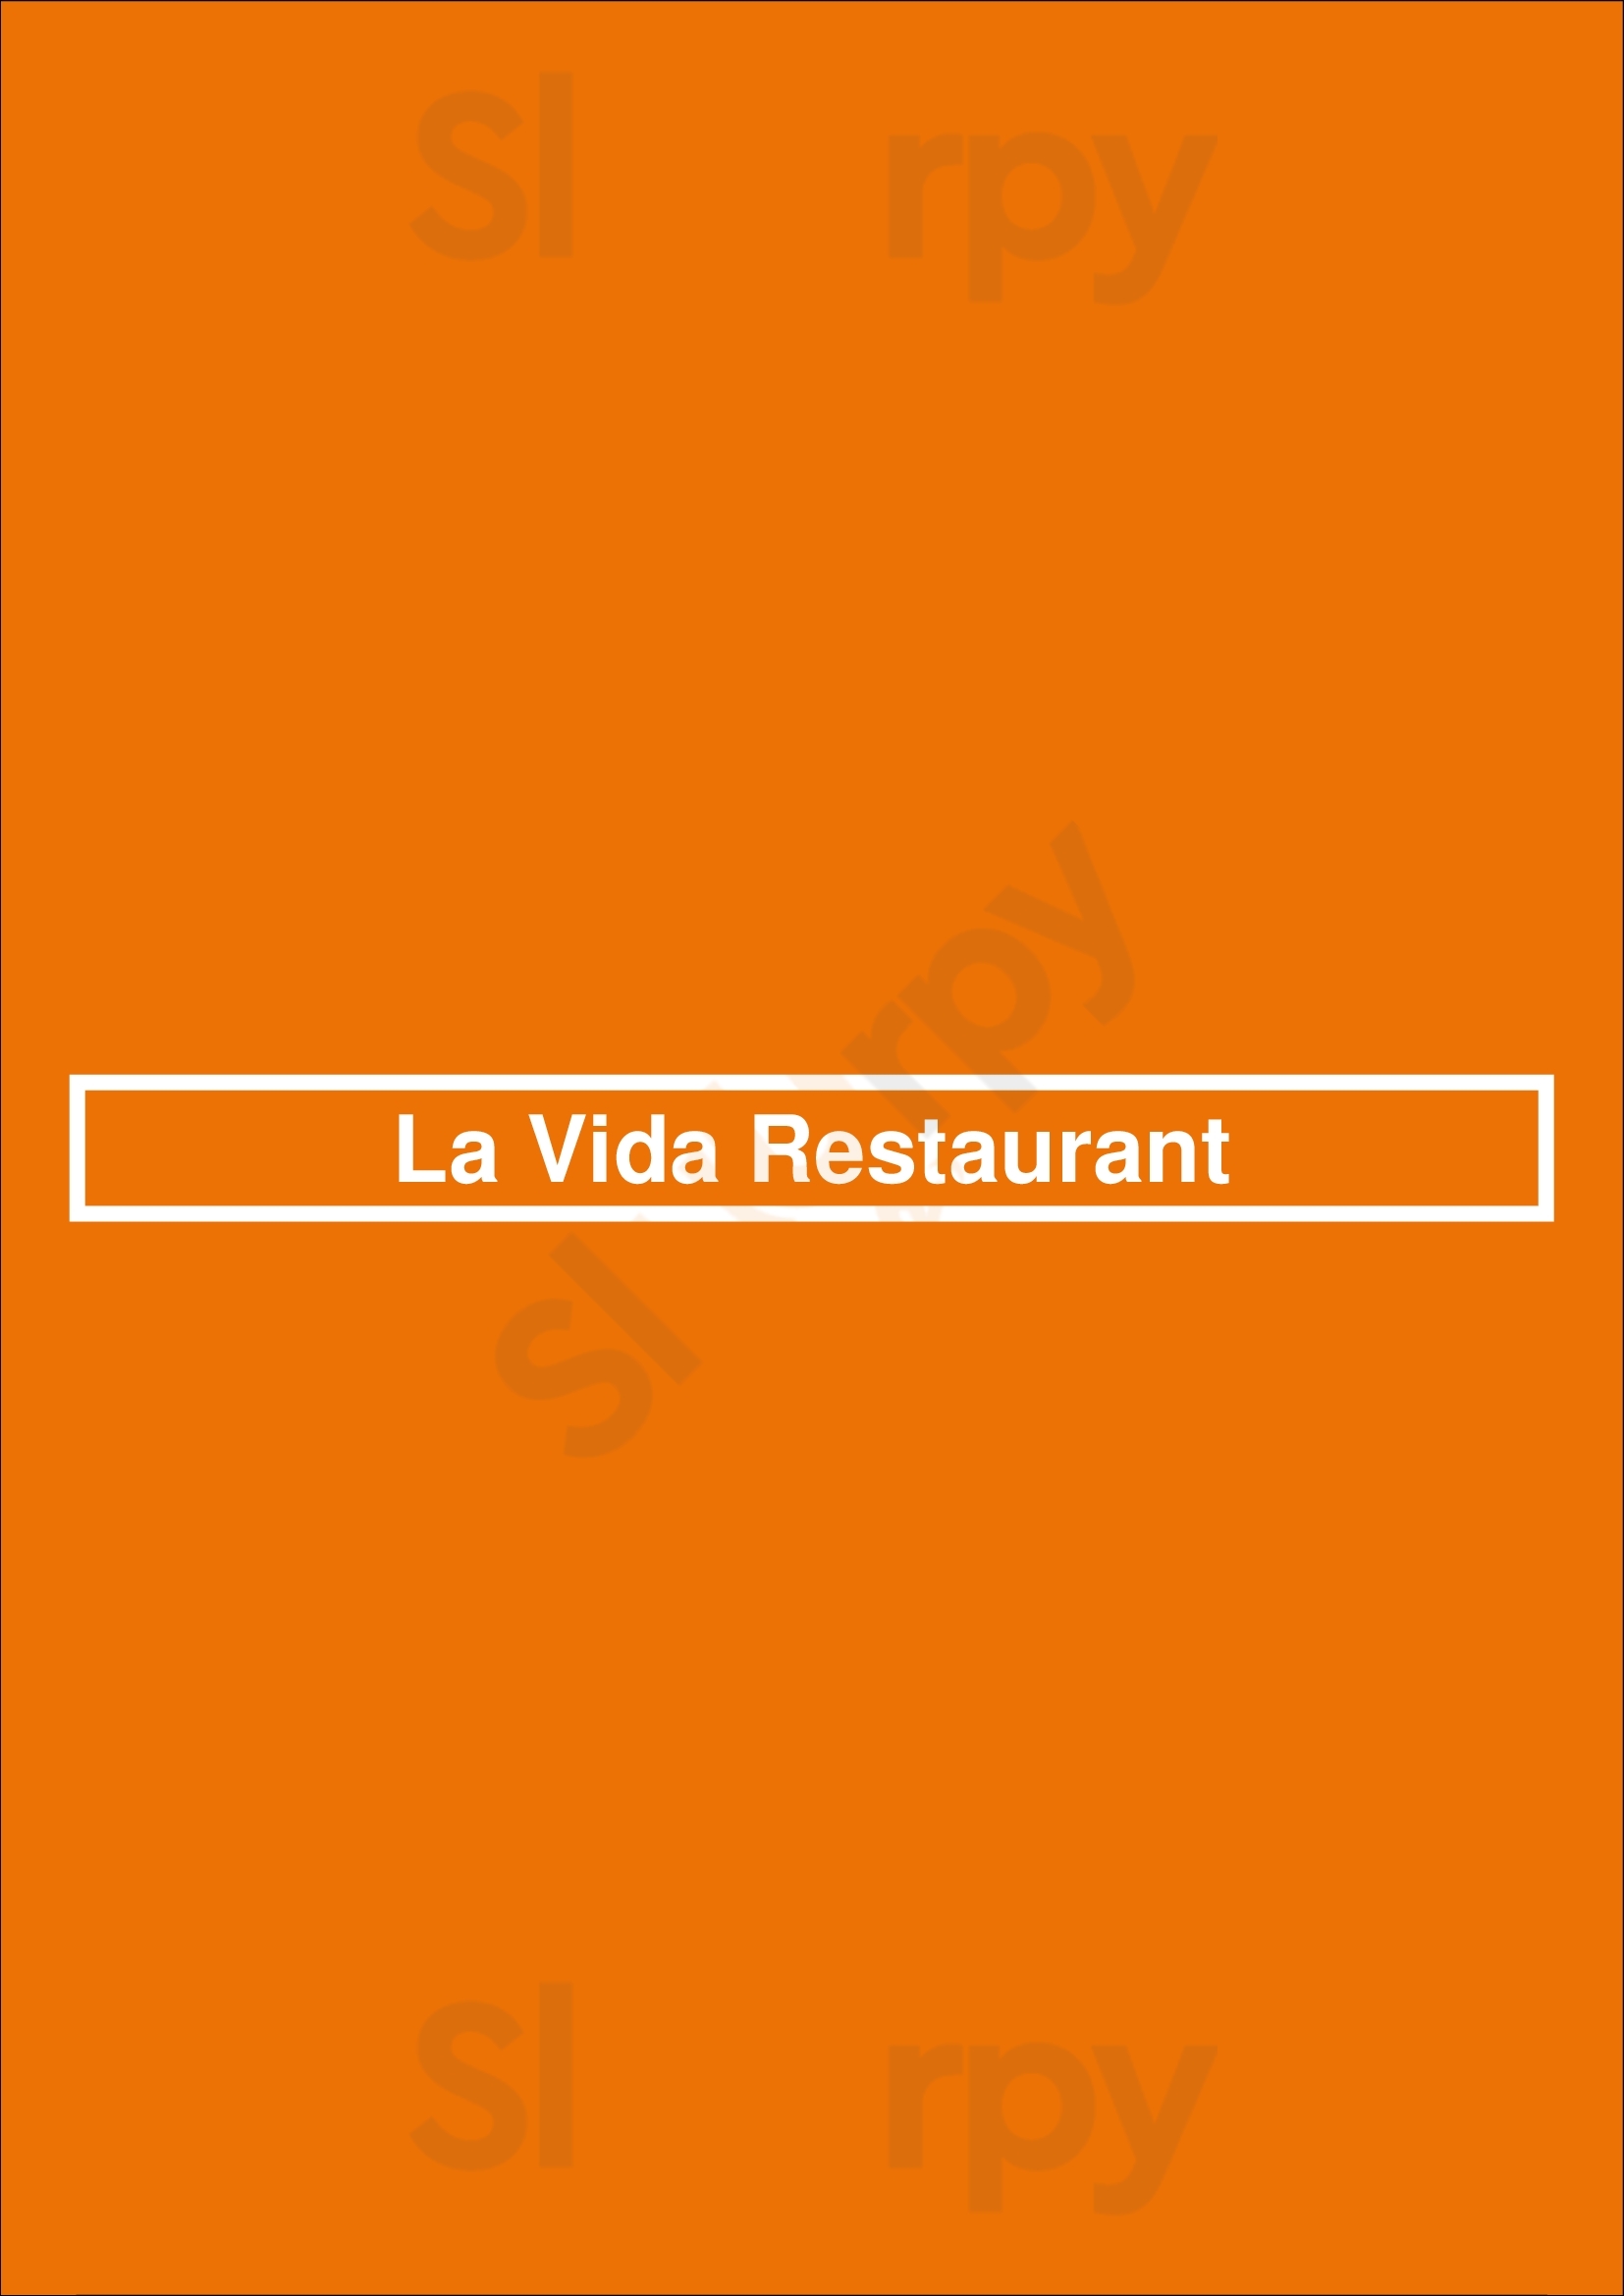 La Vida Restaurant Noosa Menu - 1